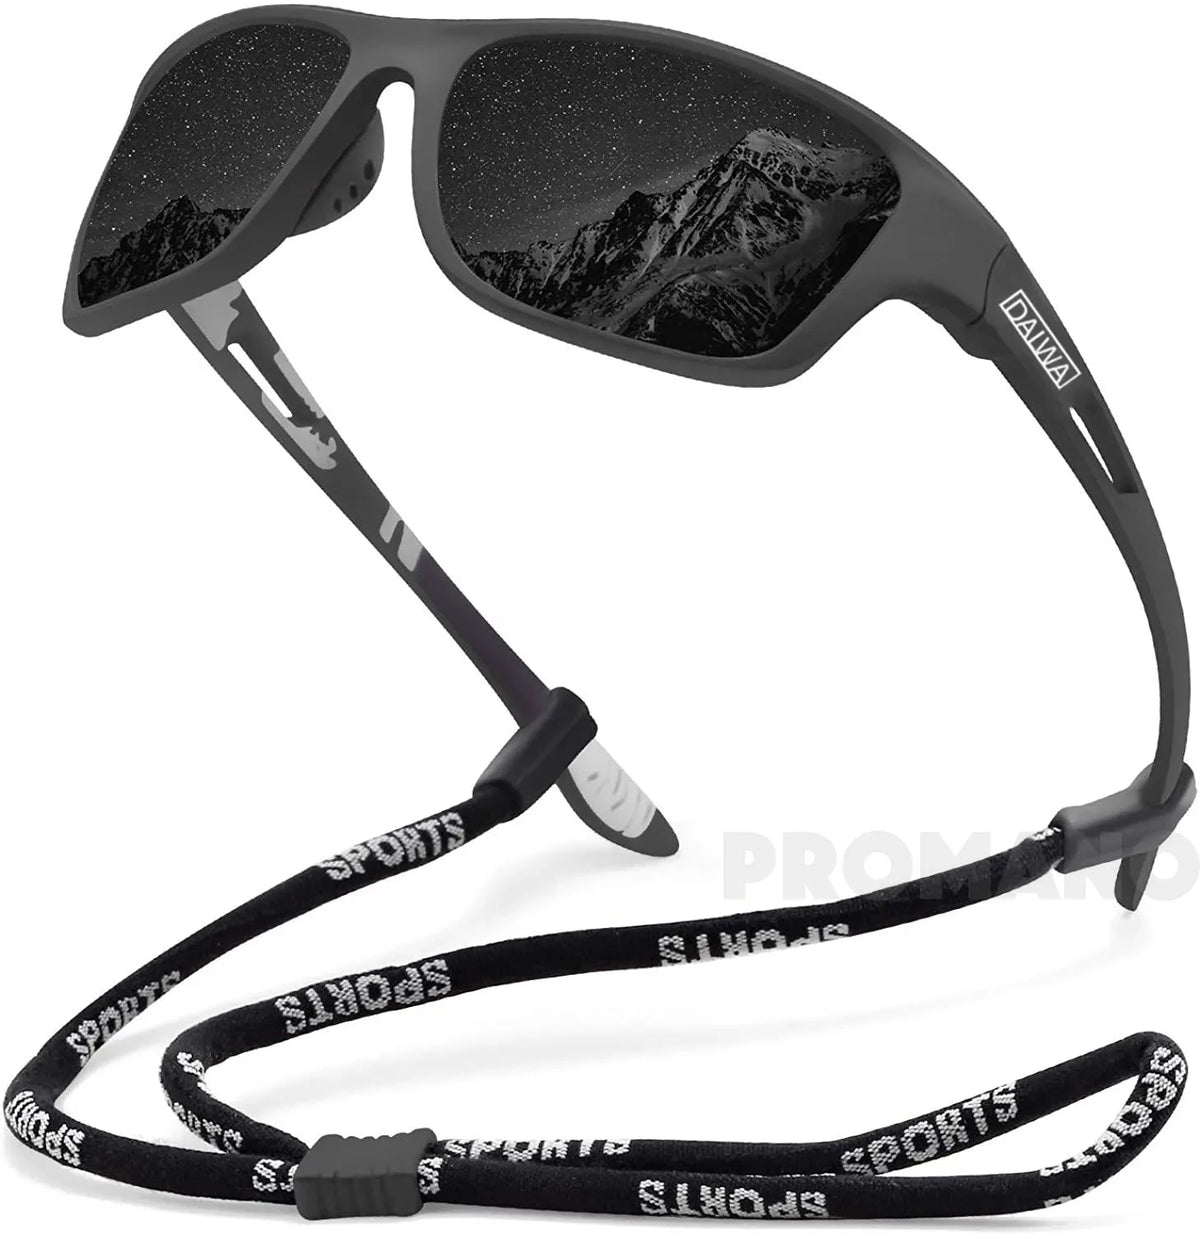 Óculos Polarizado Pesca com Corda Proteção UV400+ - Spartano Sports